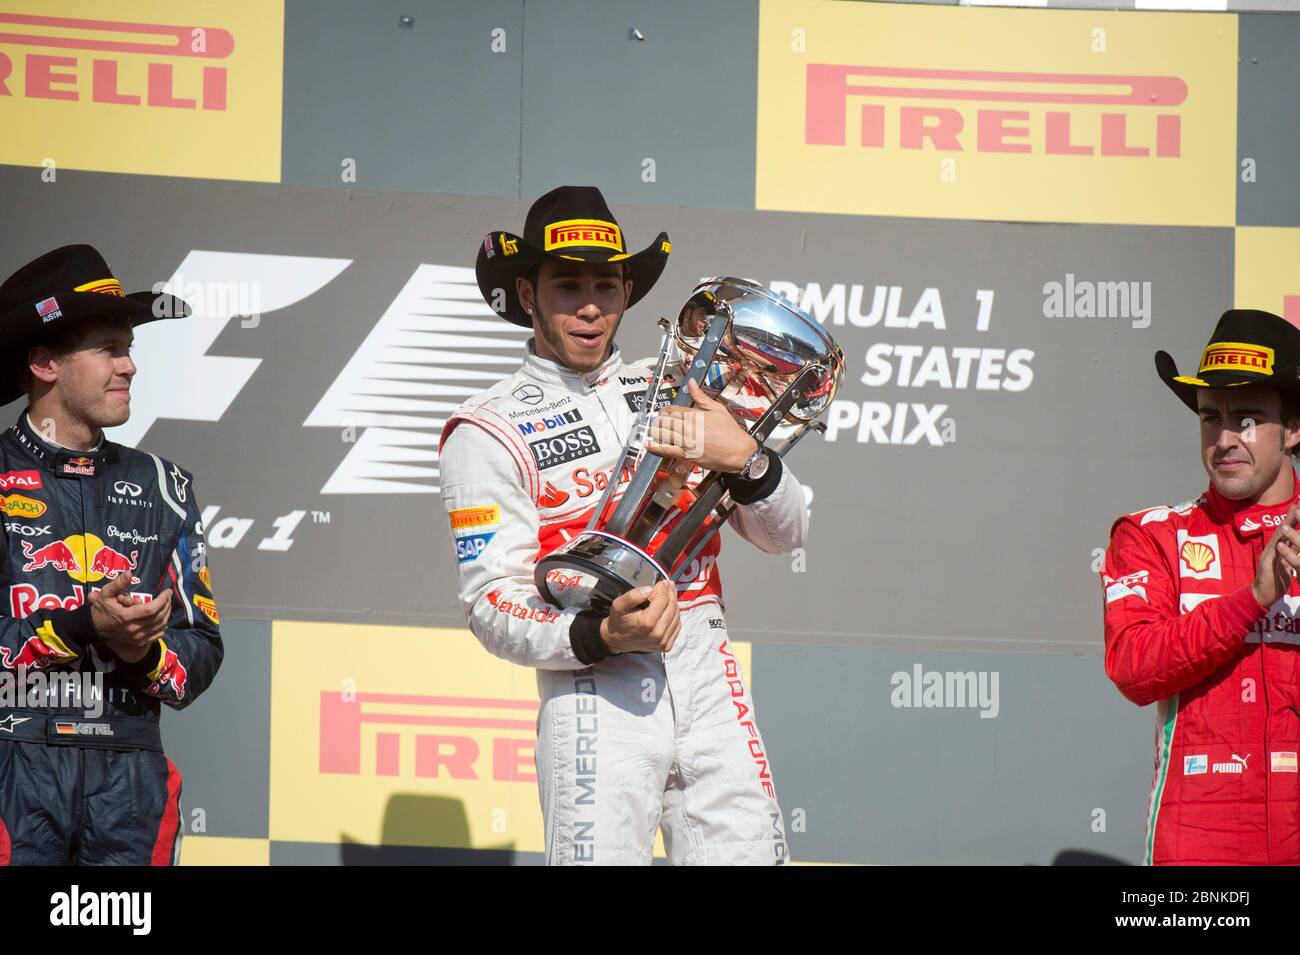 Vettel trophy immagini e fotografie stock ad alta risoluzione - Alamy